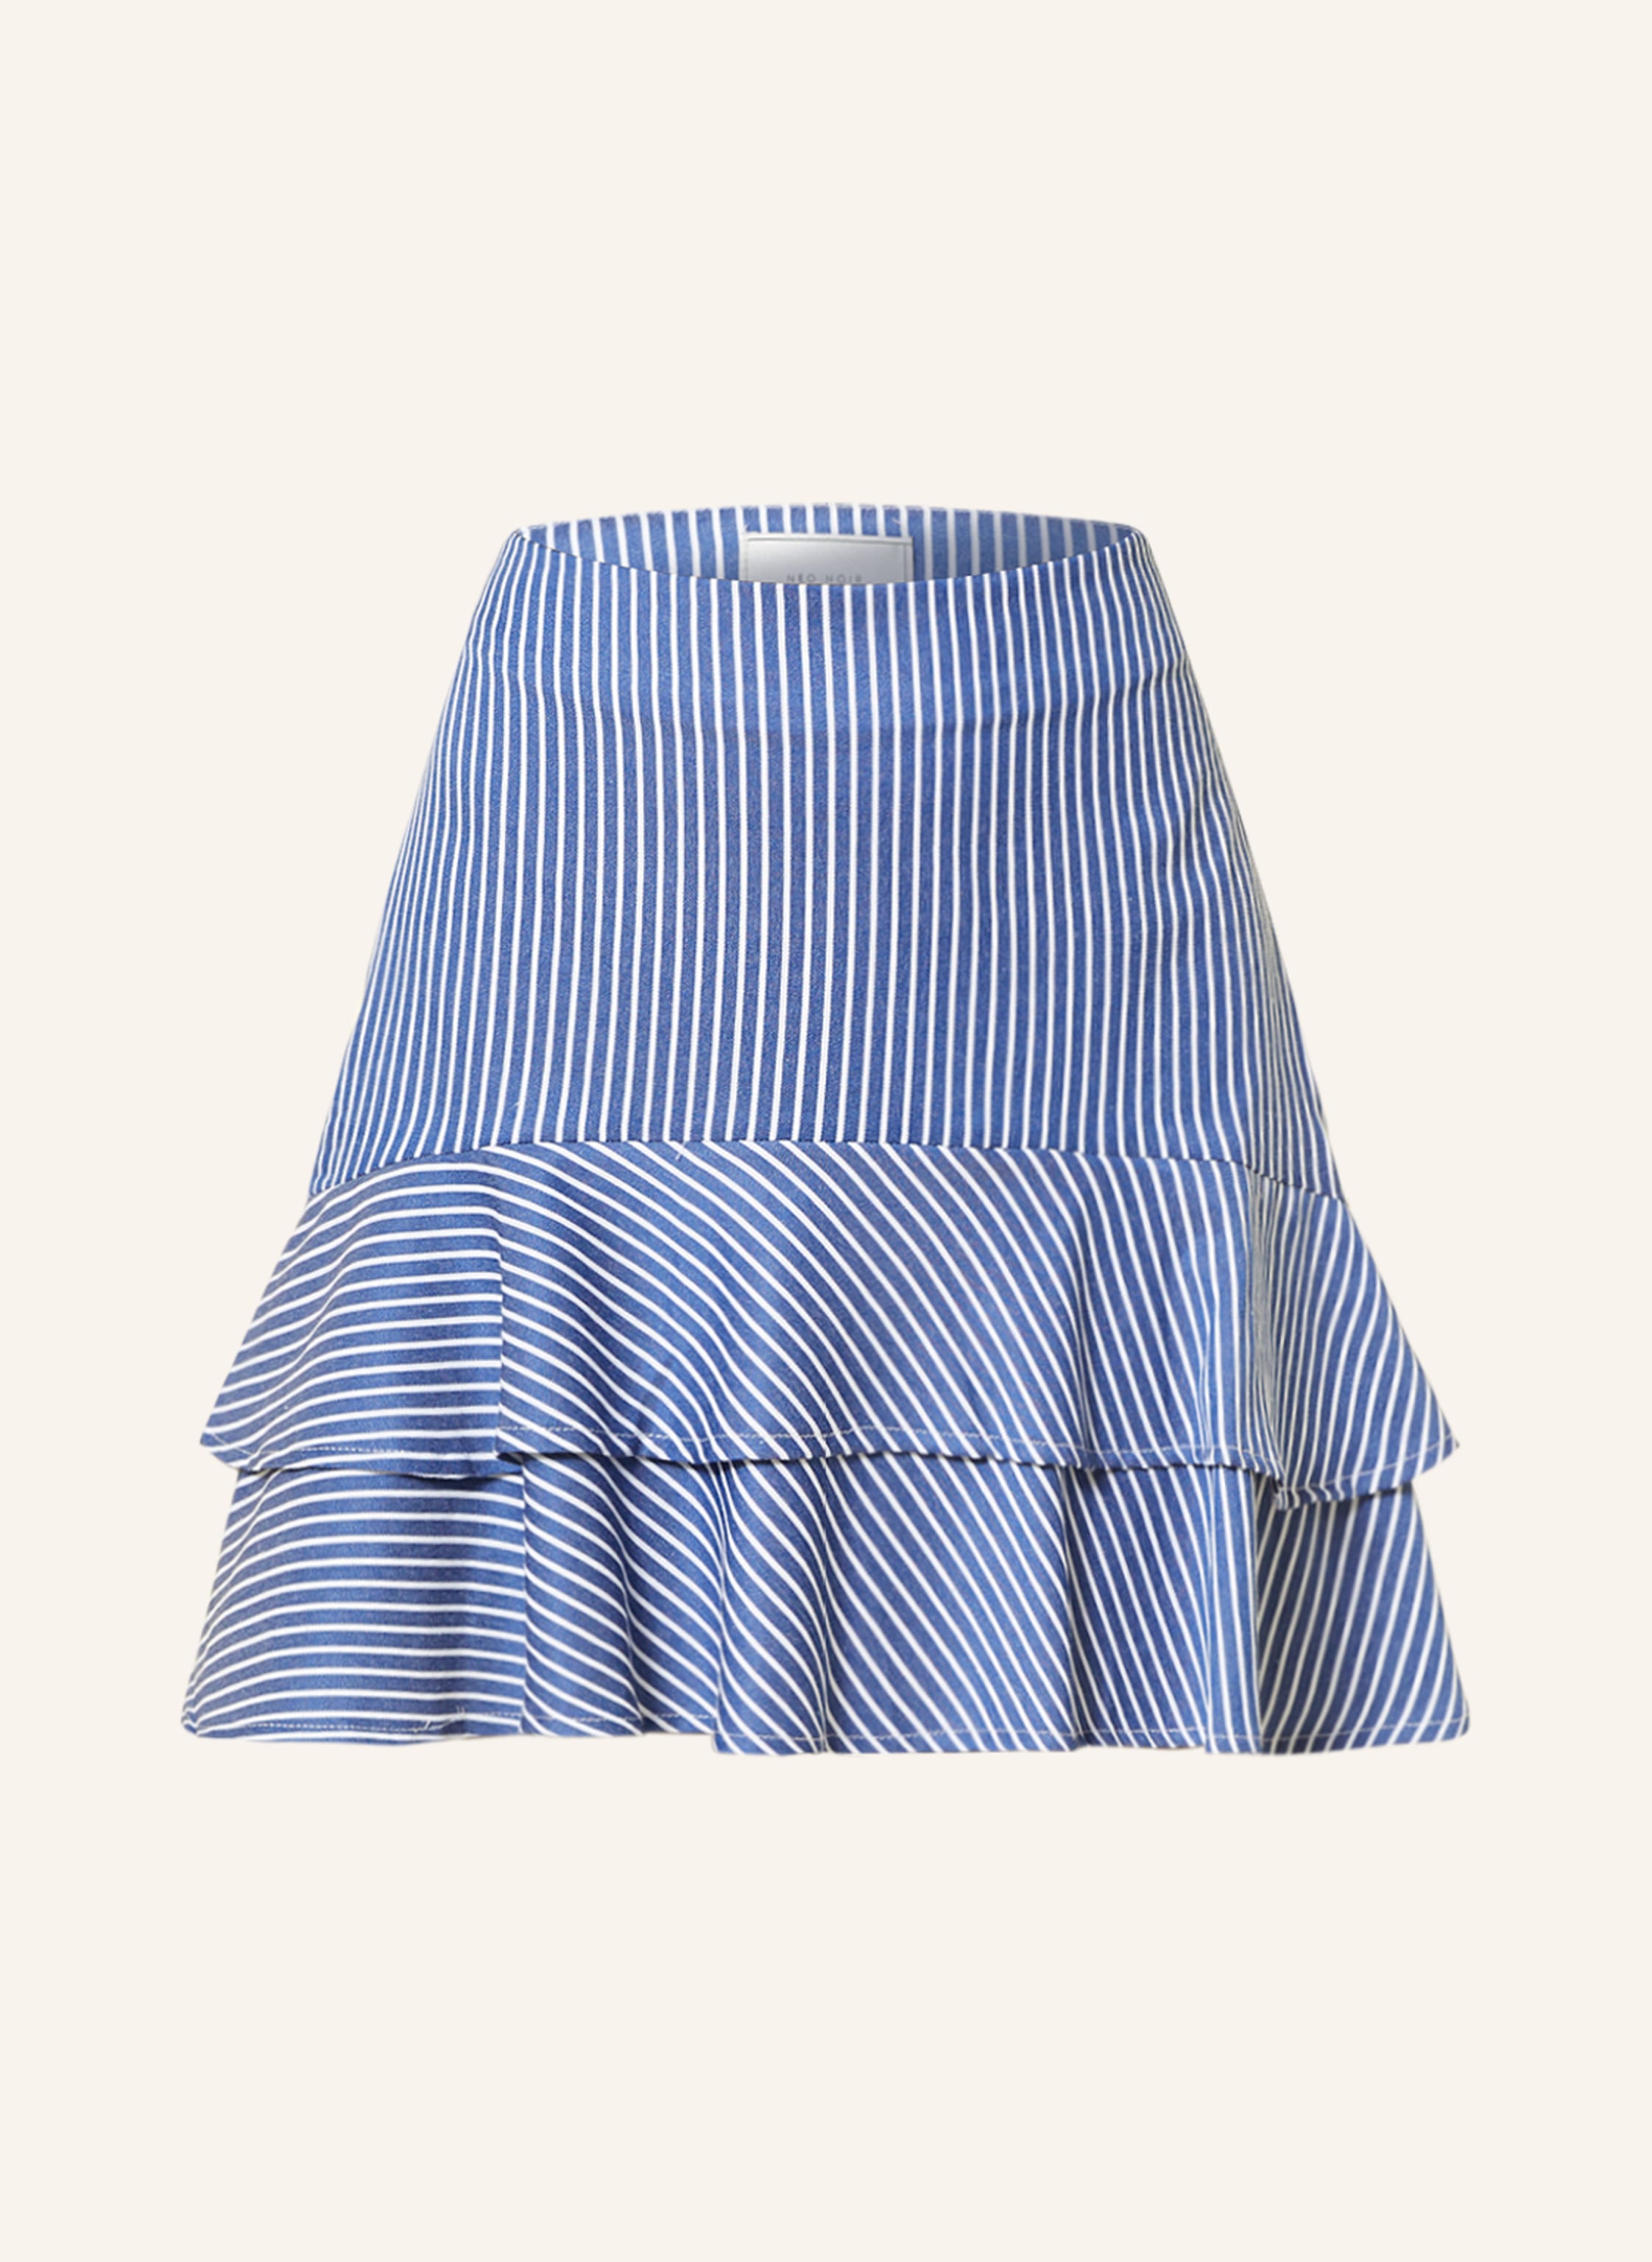 NEO NOIR Skirt in blue/ white